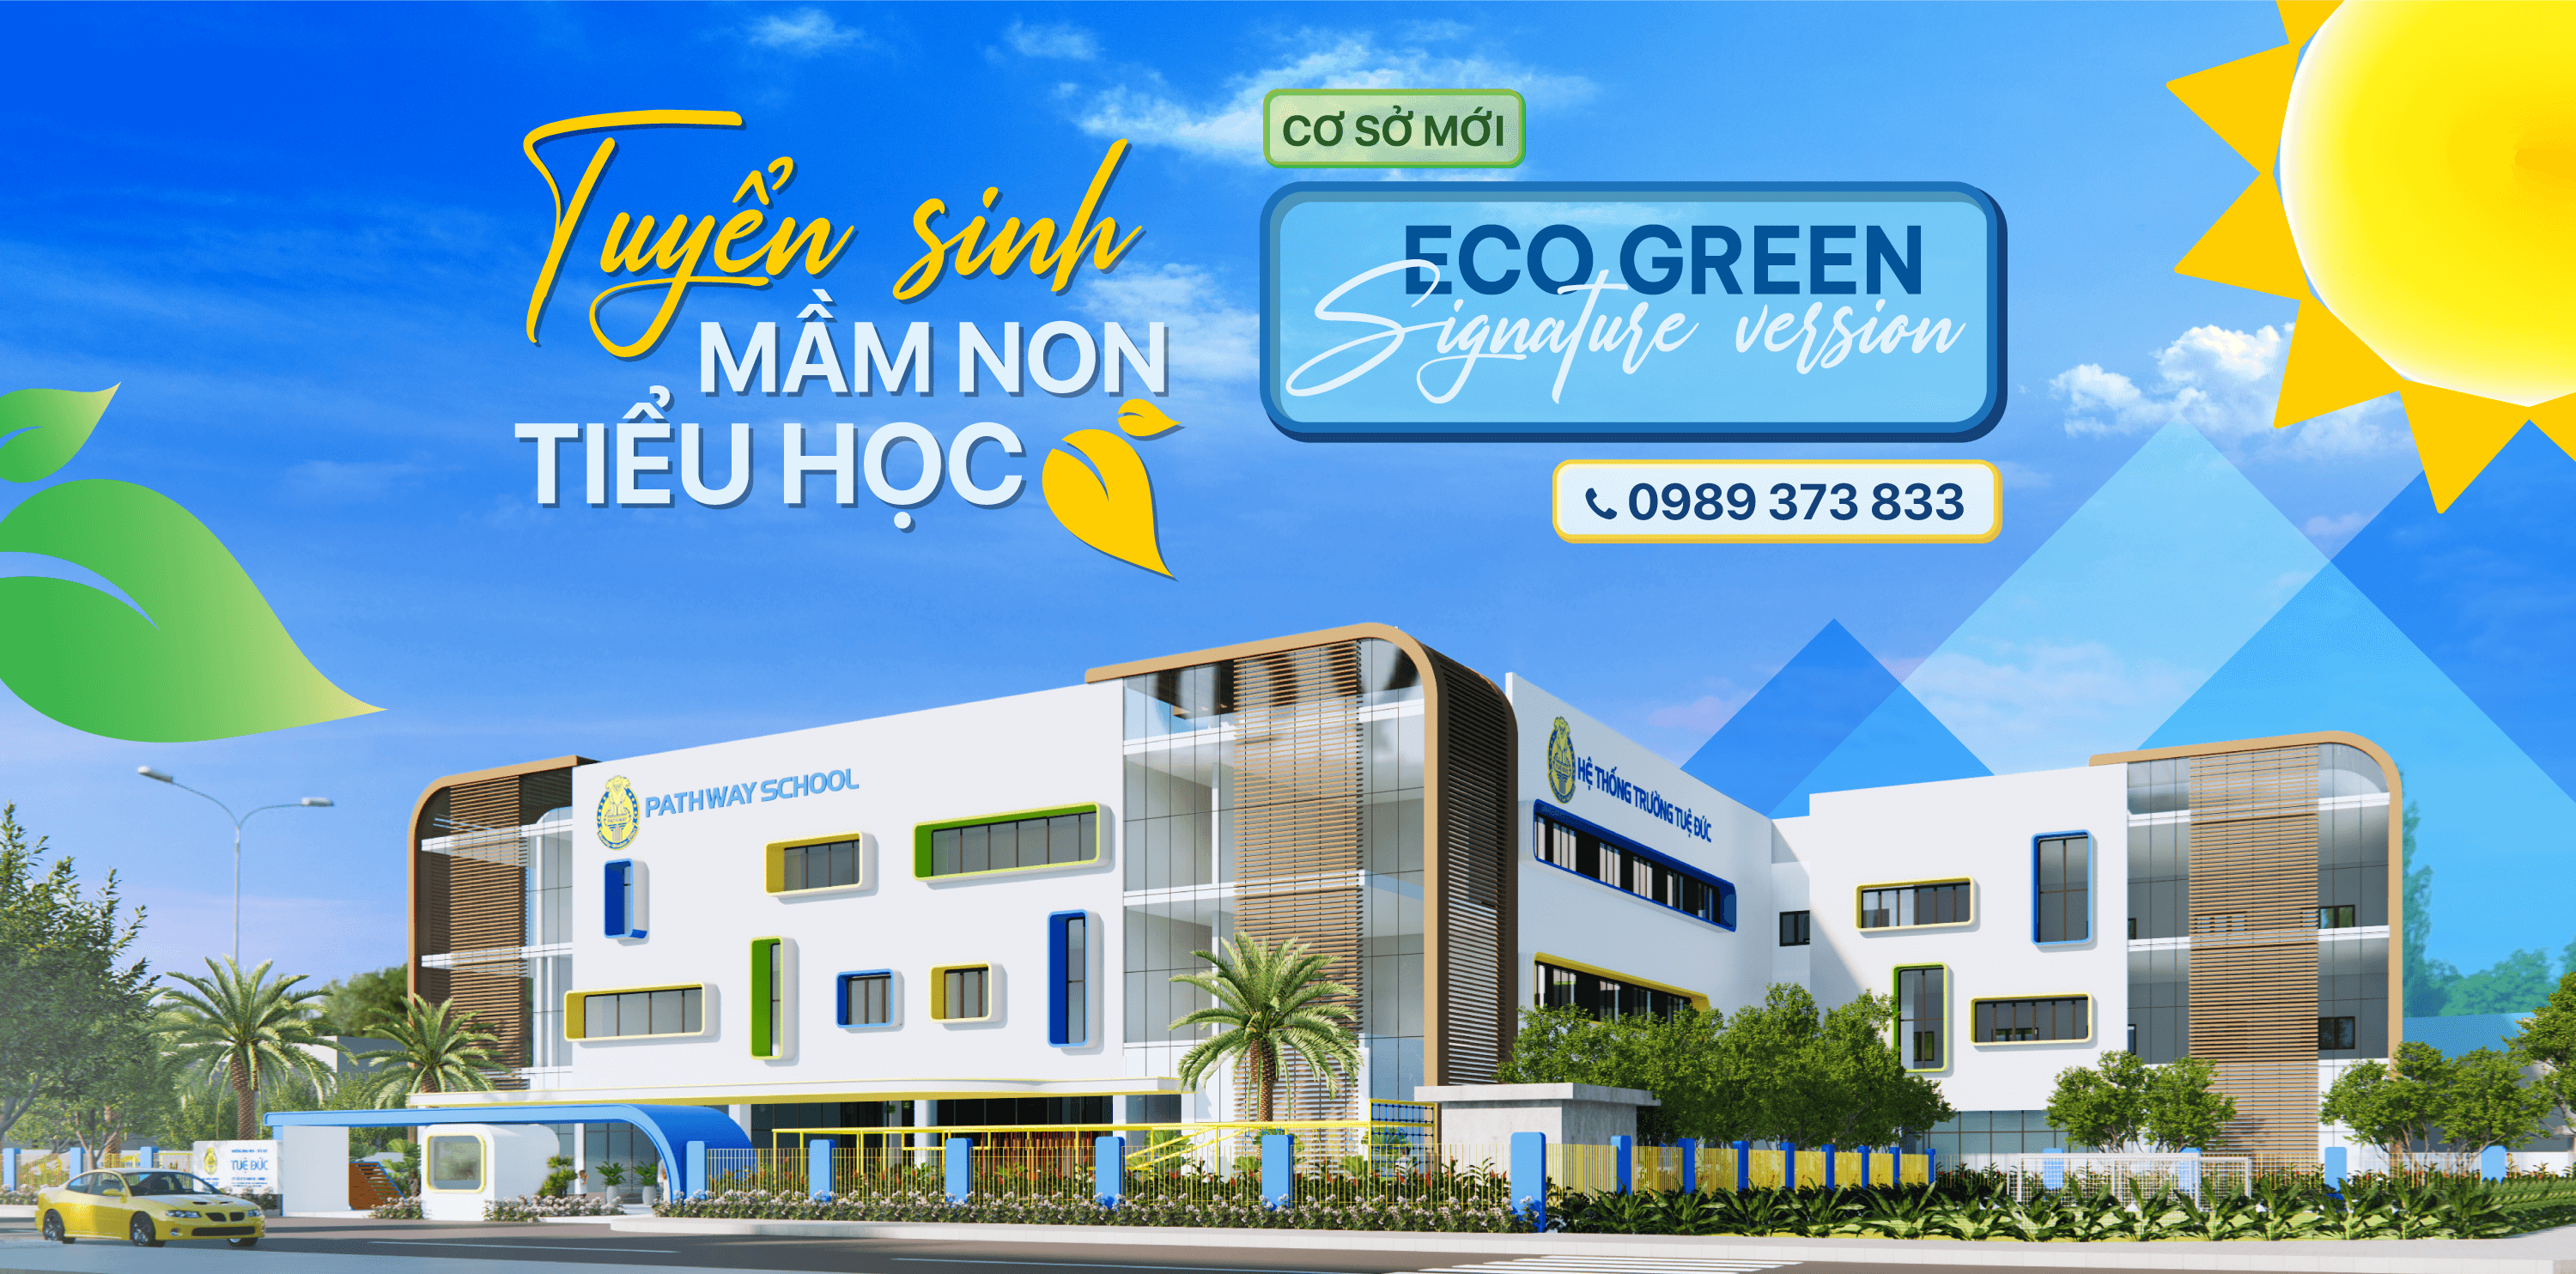 Cơ sở Eco Green